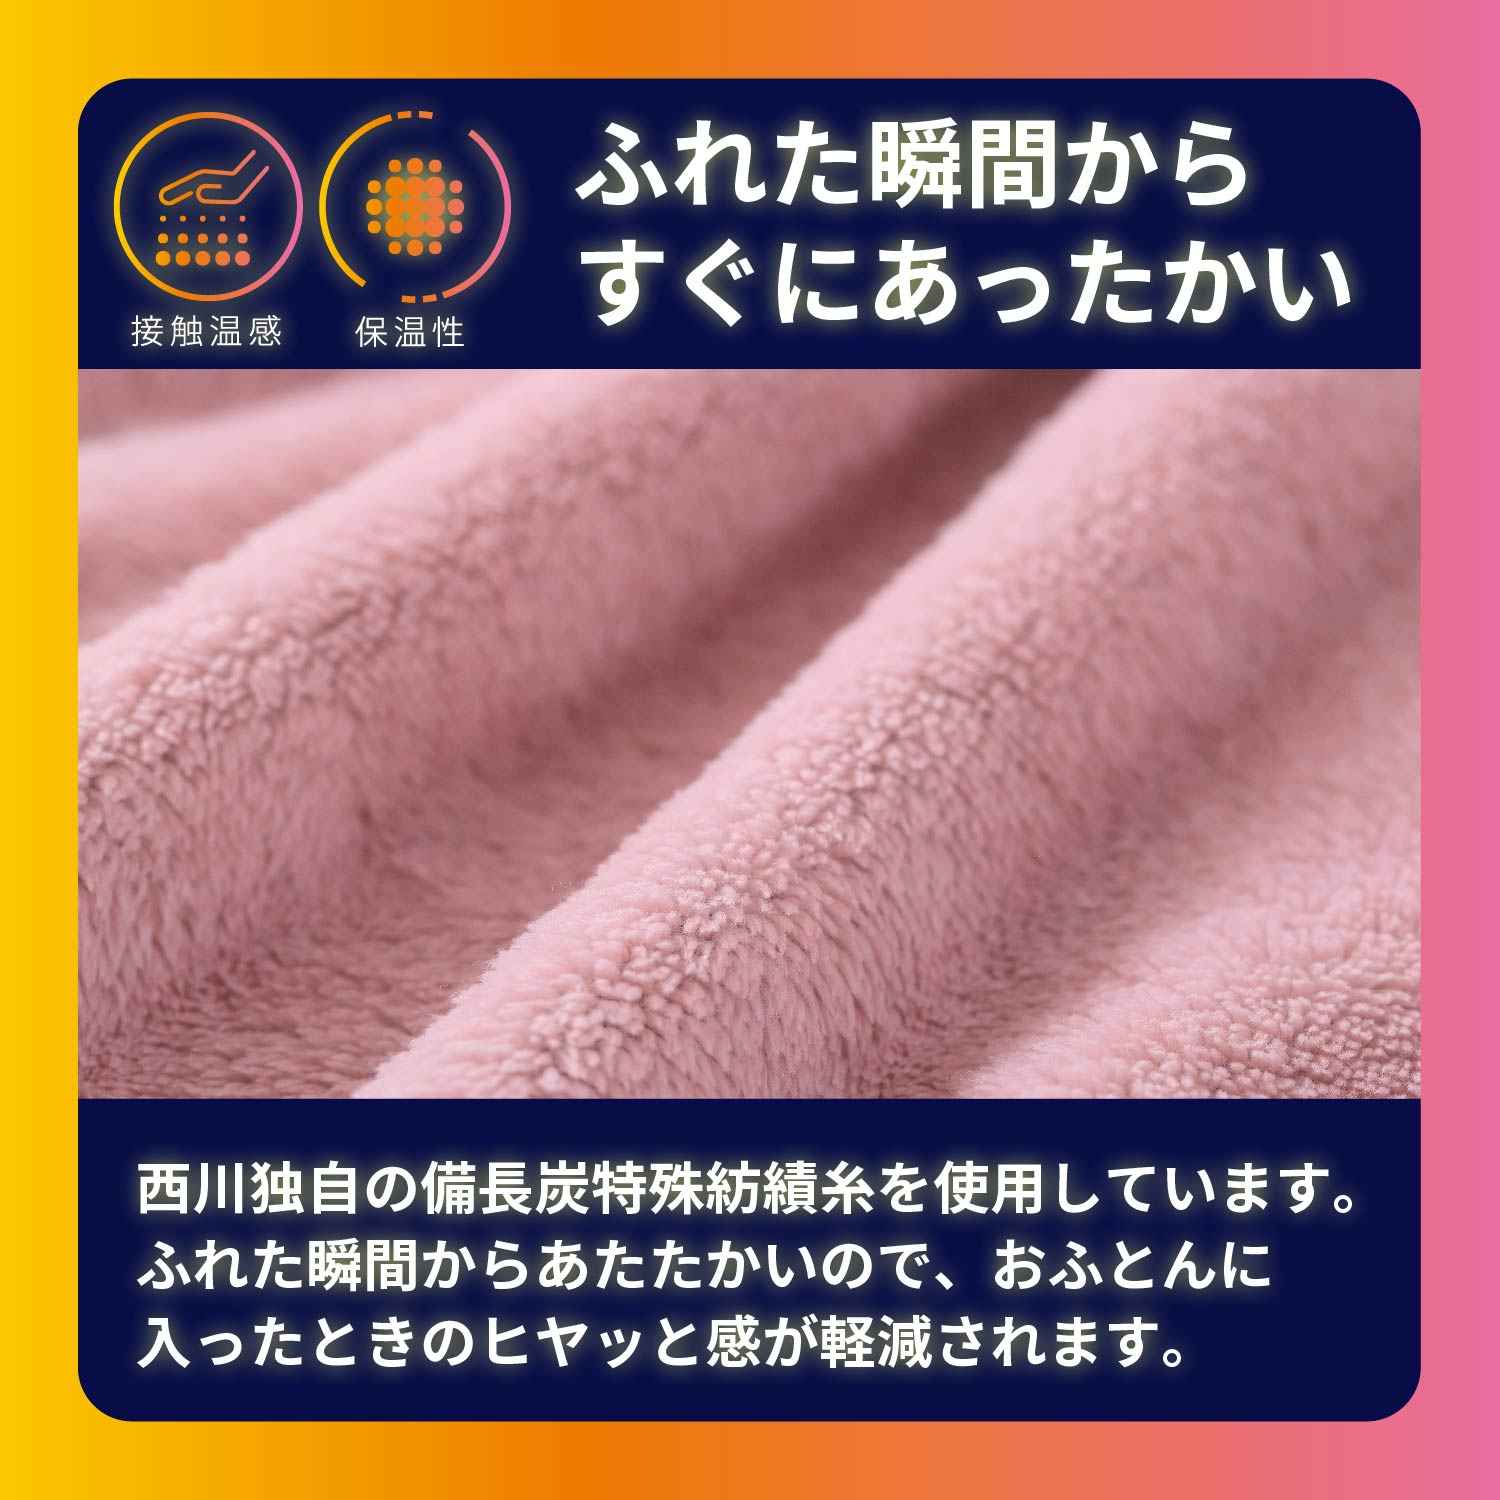 西川 洗える すぐにあったか着る毛布 備長炭特殊紡績糸使用 接触温感 蓄熱 吸湿発熱 吸放湿性 フリーサイズ ピンク